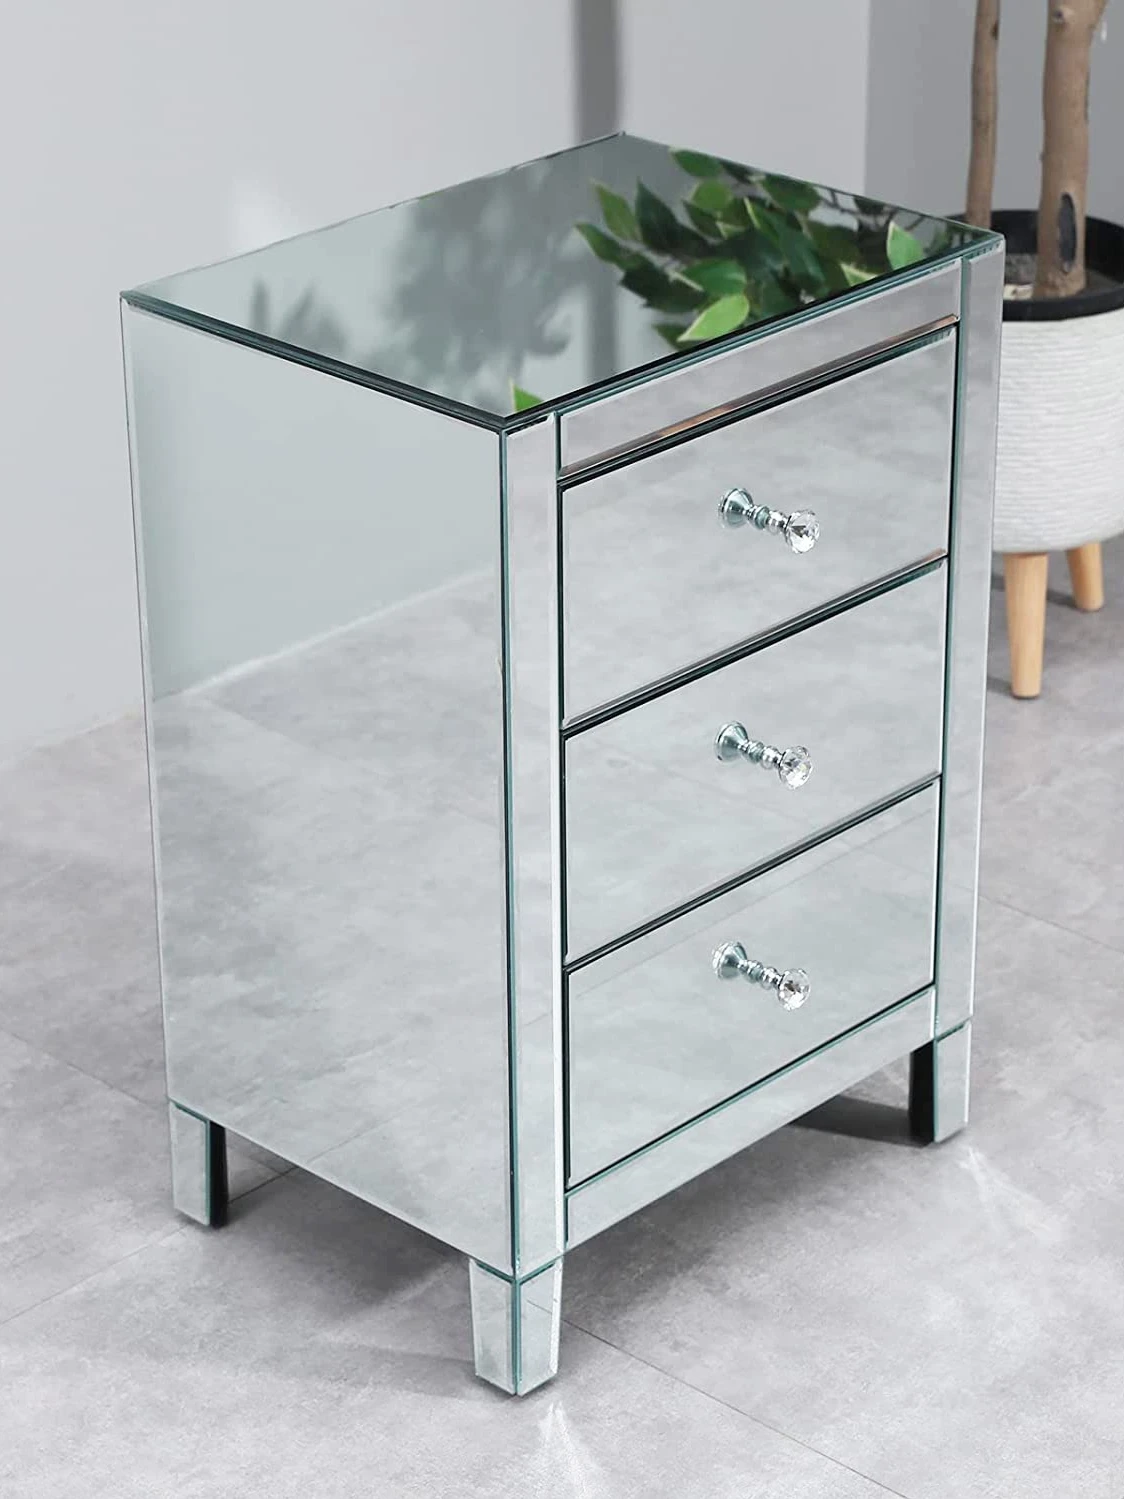 Скандинавское зеркало, маленький прикроватный столик с подсветкой, роскошный диван сбоку, несколько современных простых шкафов для хранения, многофункциональные шкафчики